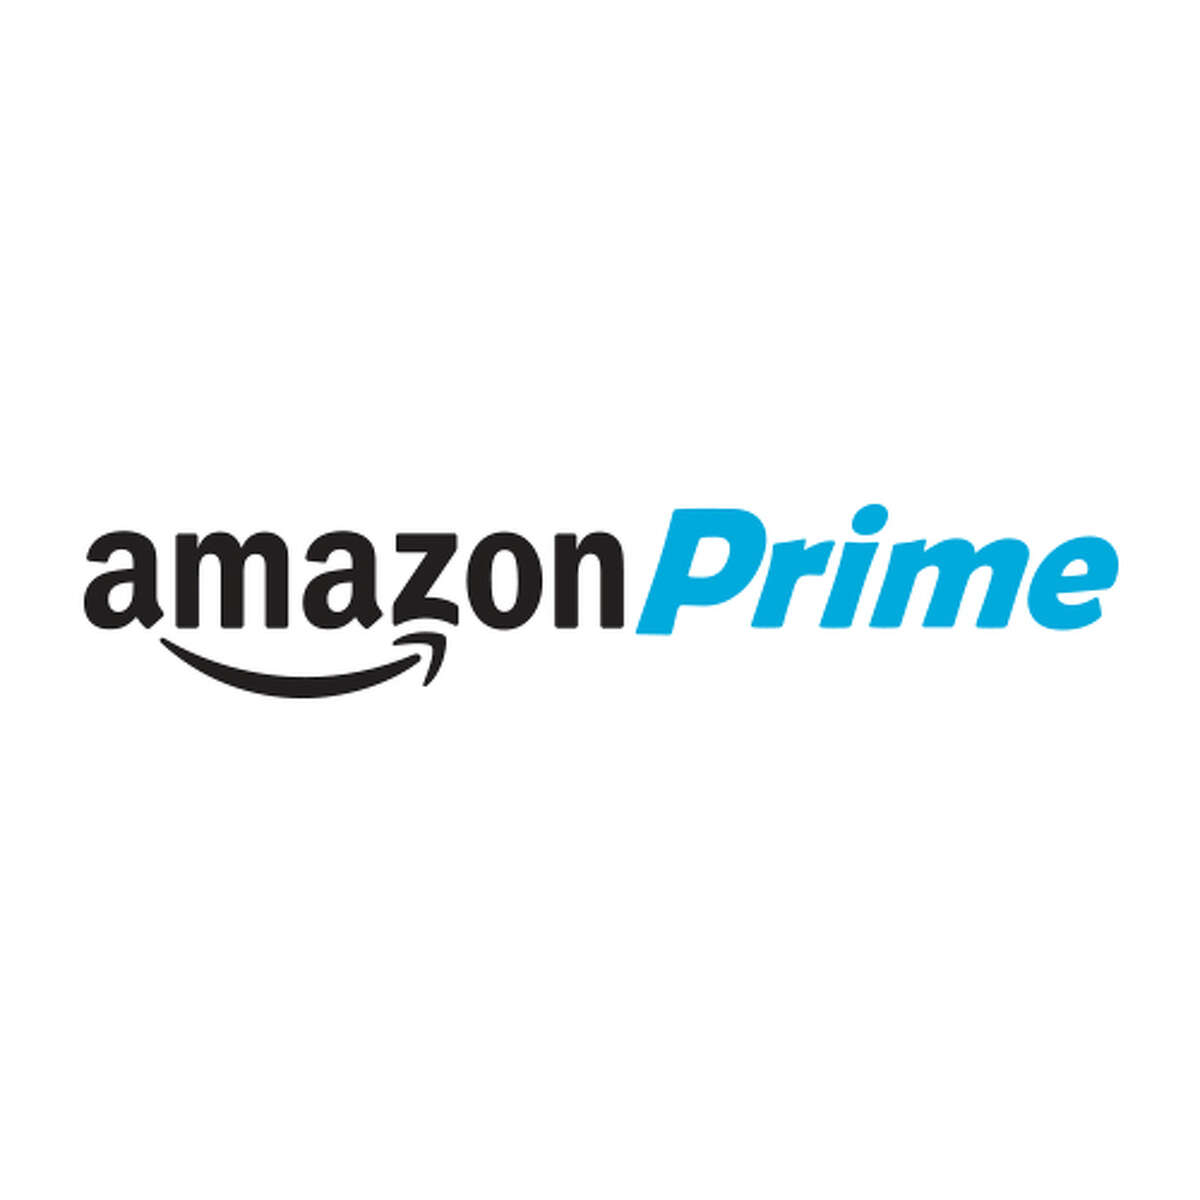 Old Amazon Prime logo